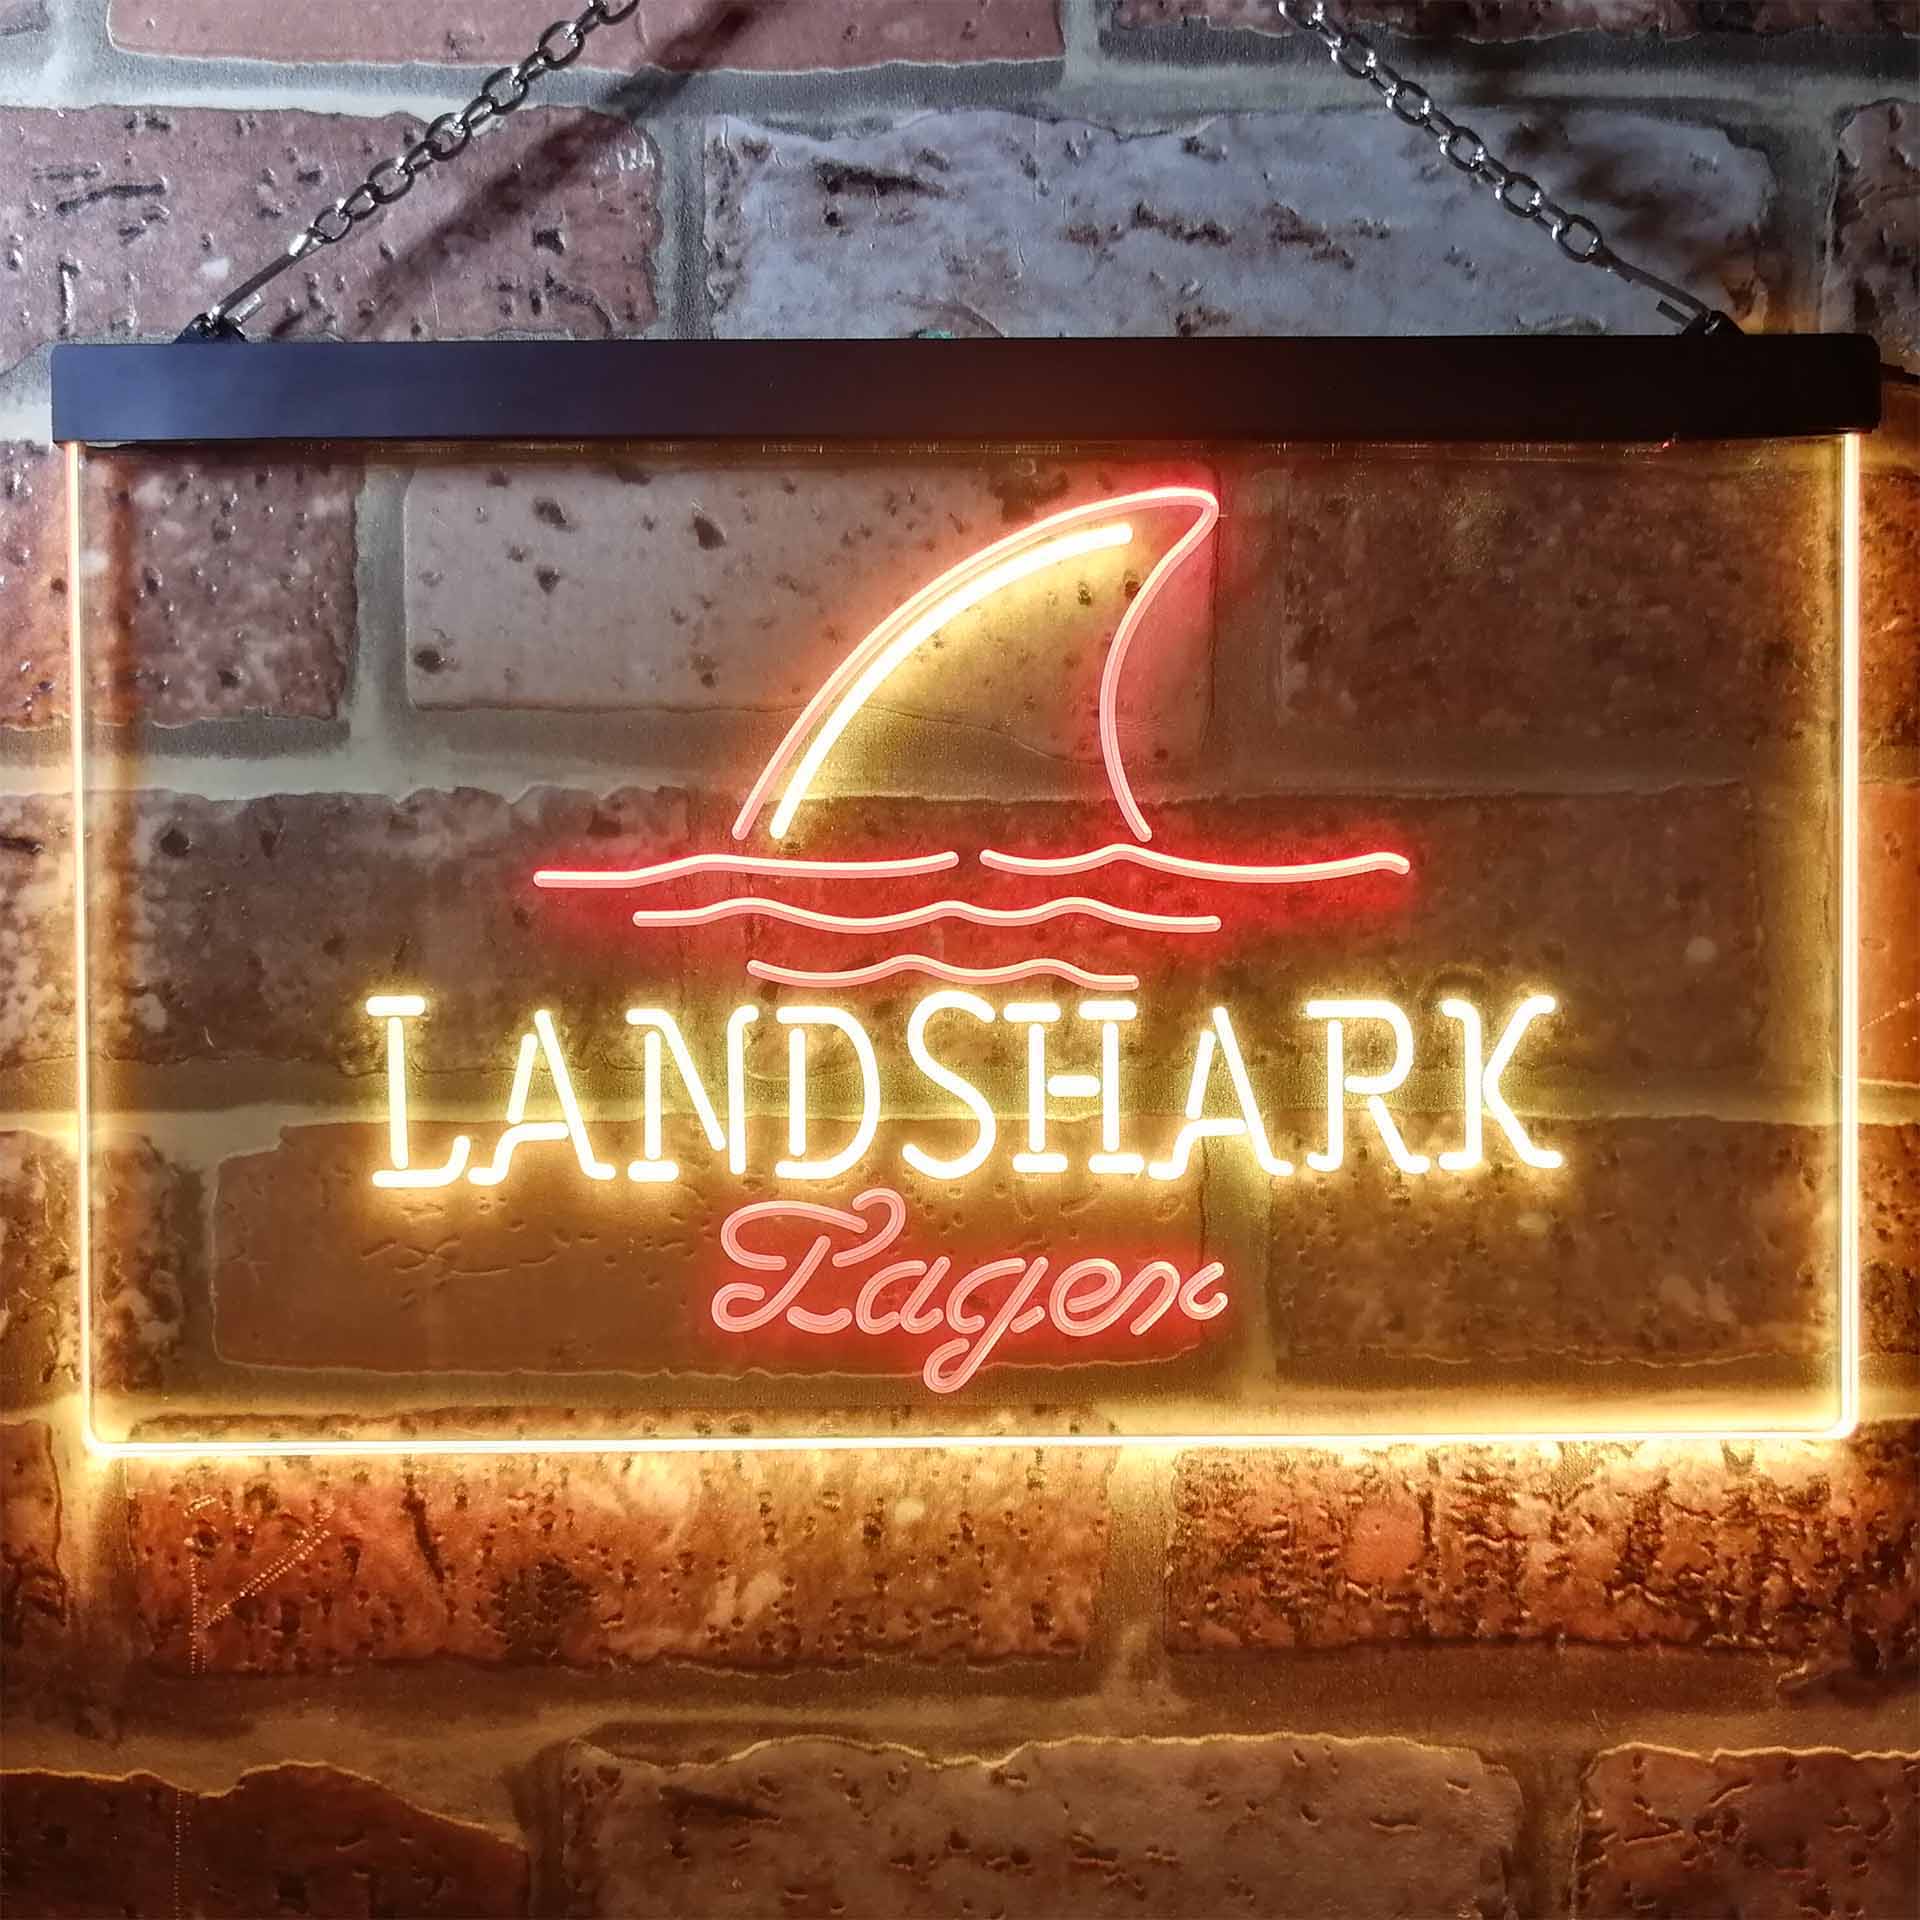 Landshark Larger Beer Dual Color LED Neon Sign ProLedSign